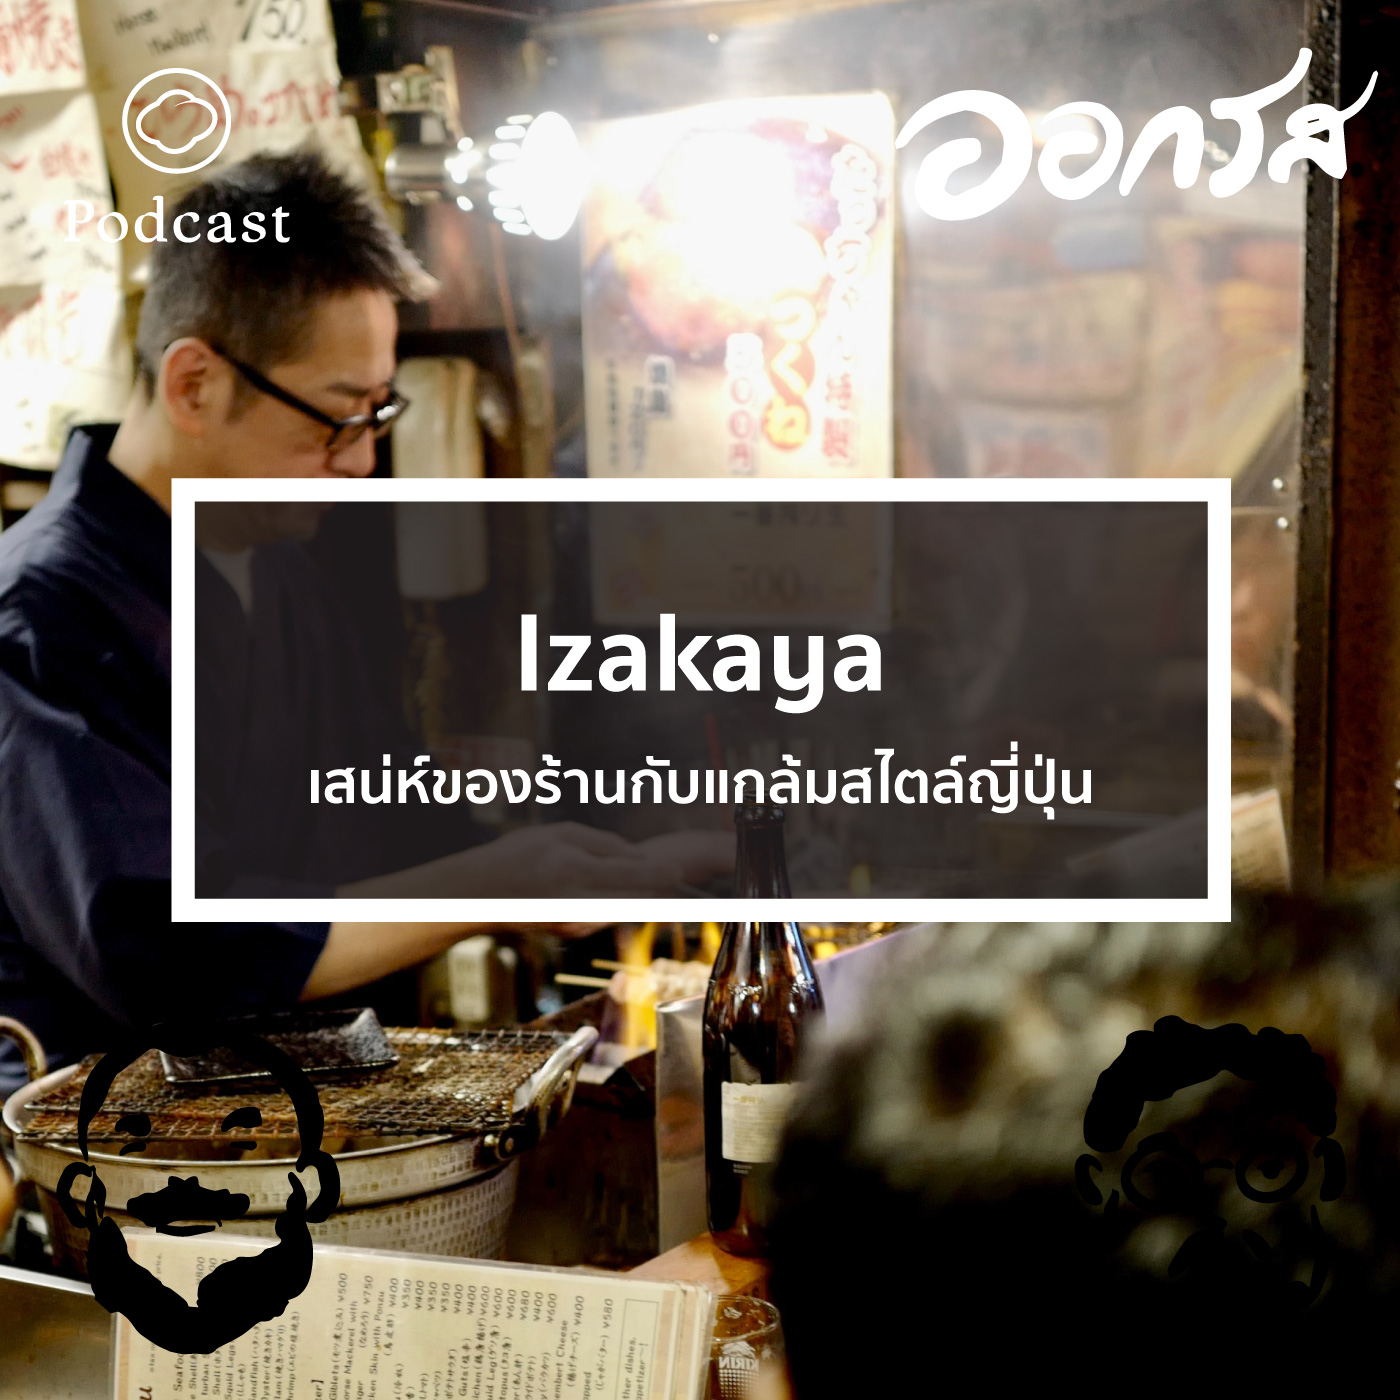 EP. 51 Izakaya เสน่ห์ของร้านกับแกล้มสไตล์ญี่ปุ่น - The Cloud Podcast